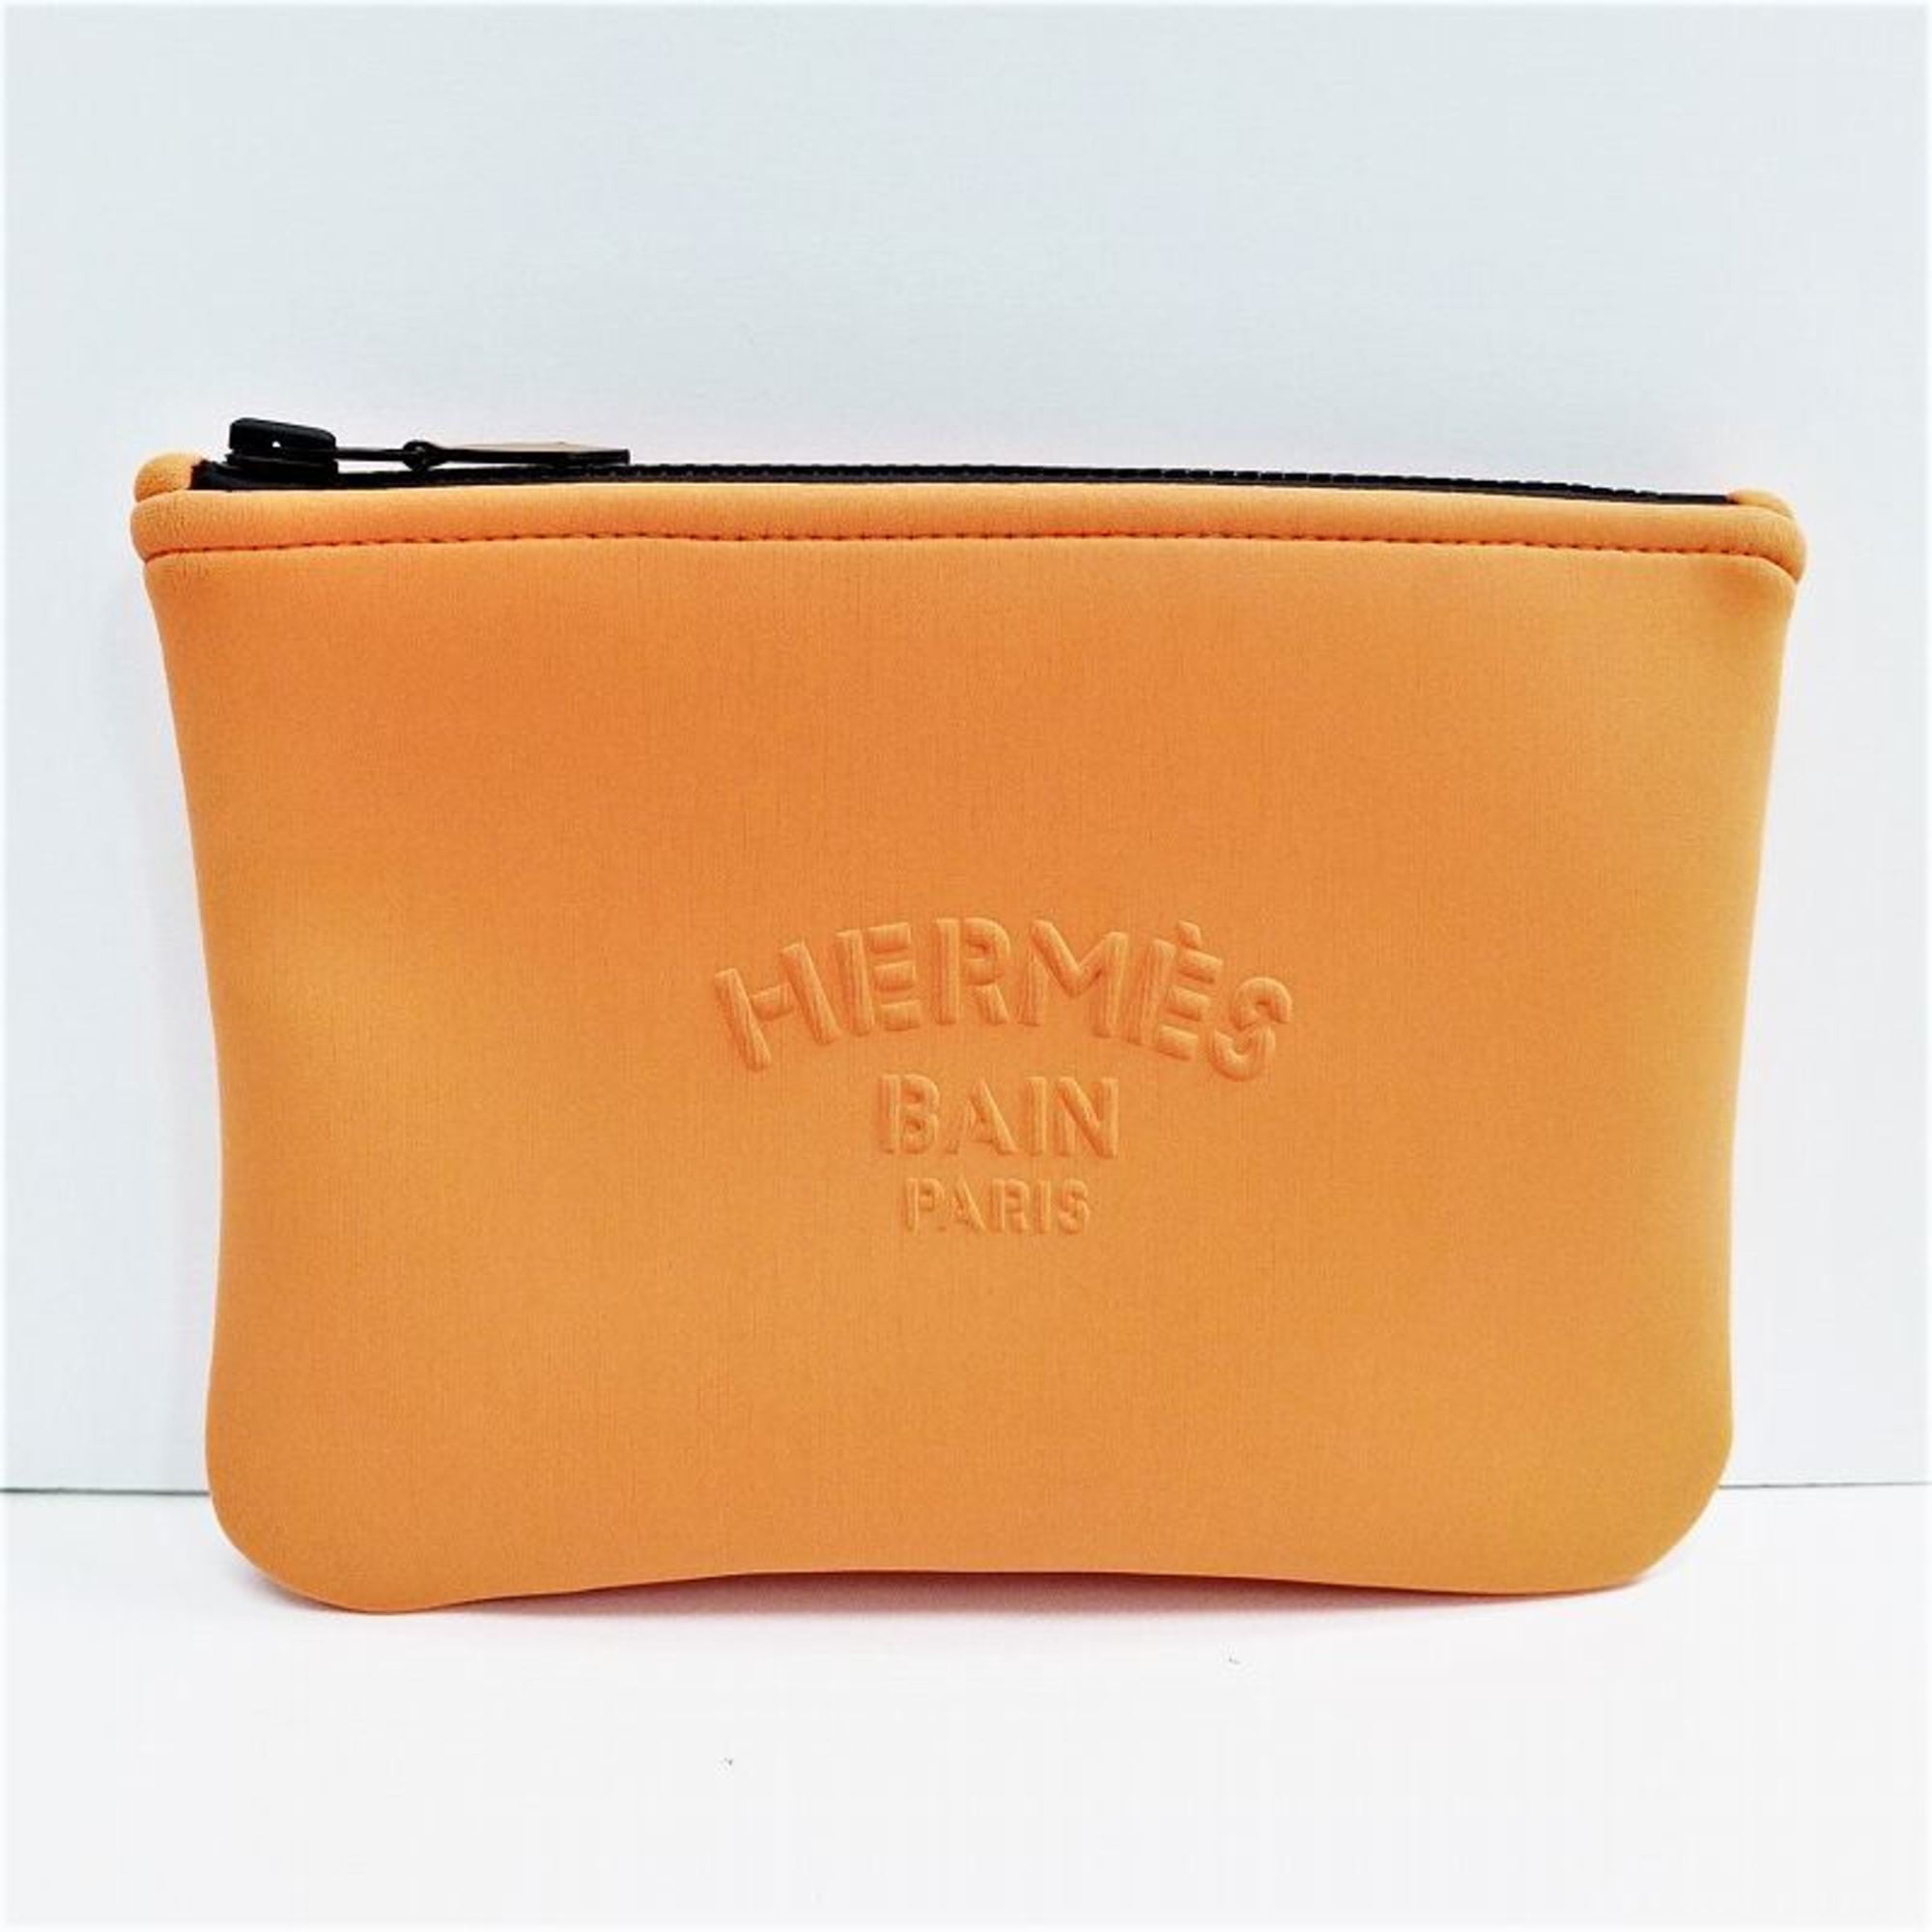 Hermes Bain cross-body, pouch & wristlet